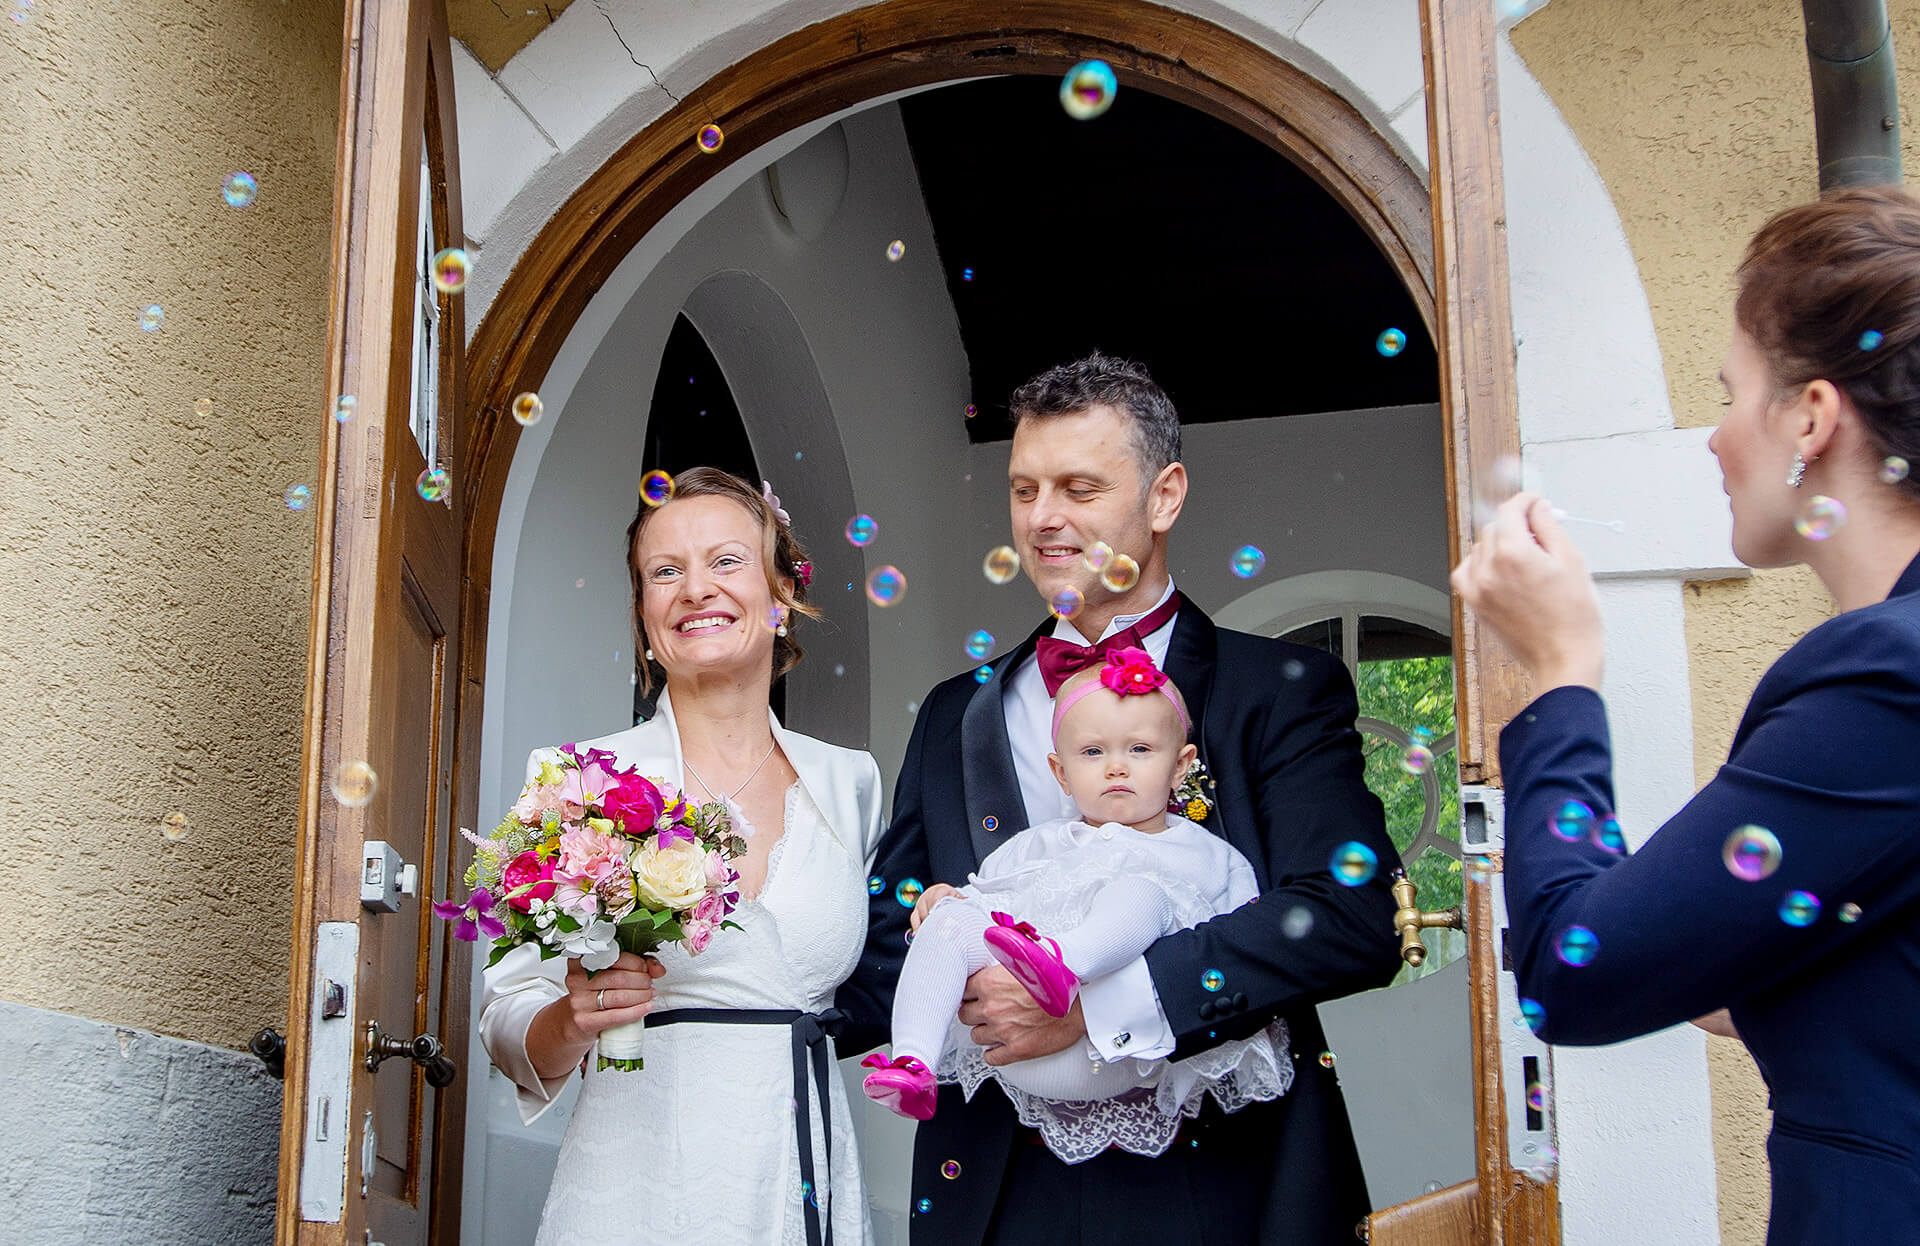 Eine wunderschöne Braut und ein eleganter Bräutigam und einem Baby auf dem Arm stehen vor einer mit Blumen geschmückten Tür und umgeben von schwebenden Seifenblasen